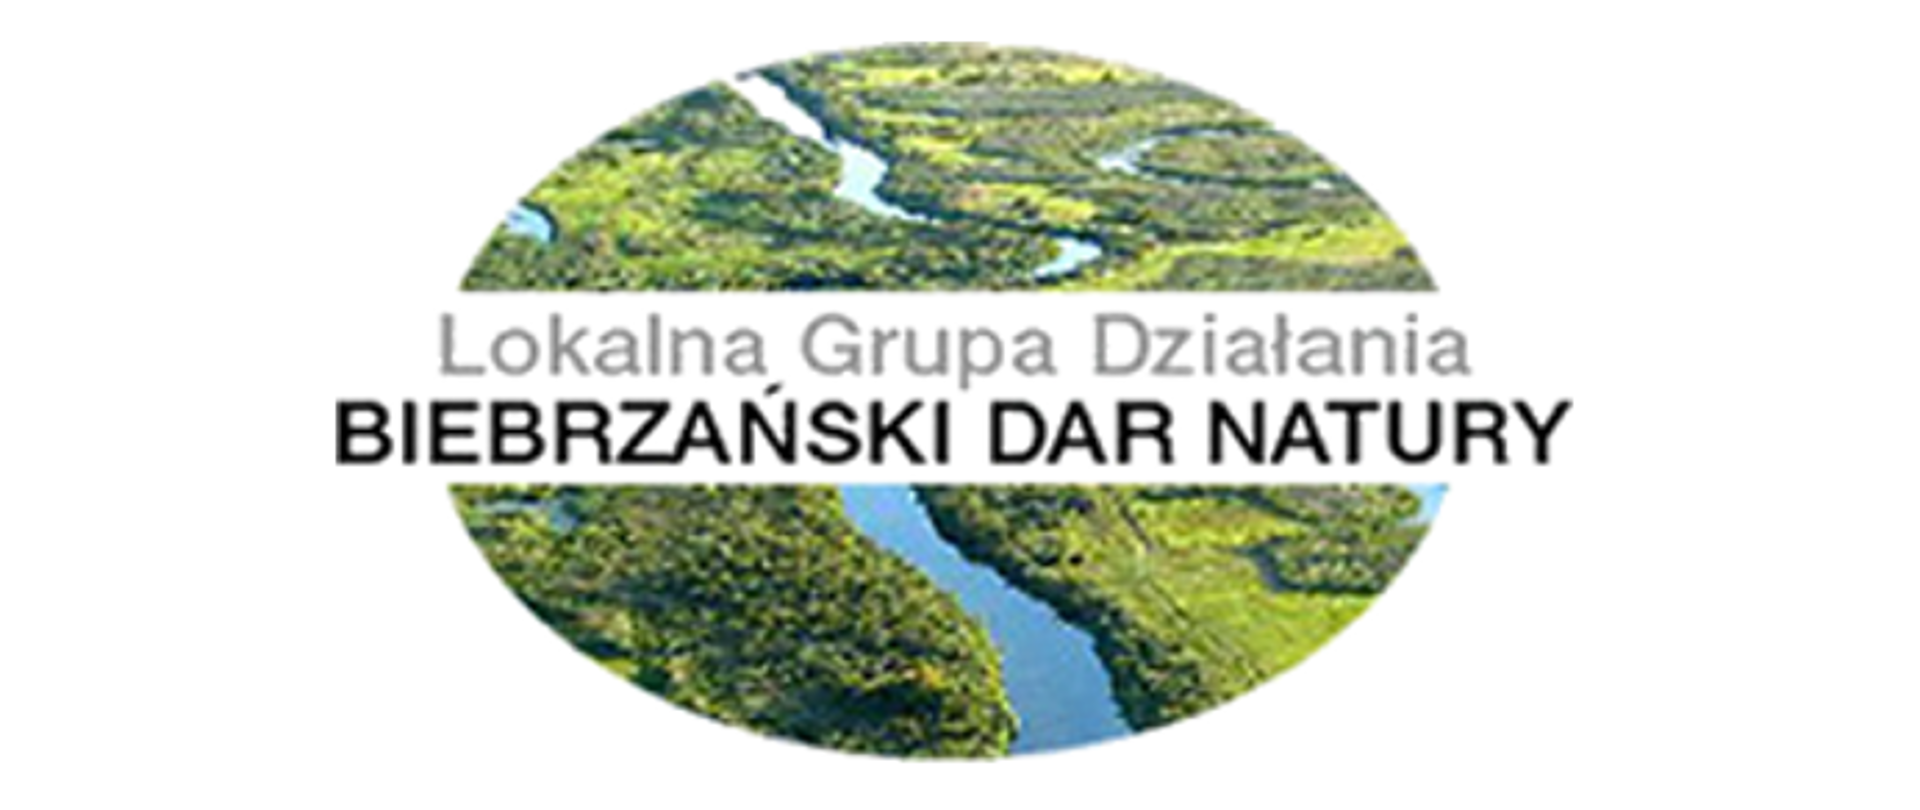 Lokalna Grupa Działania Biebrzański Dar Natury